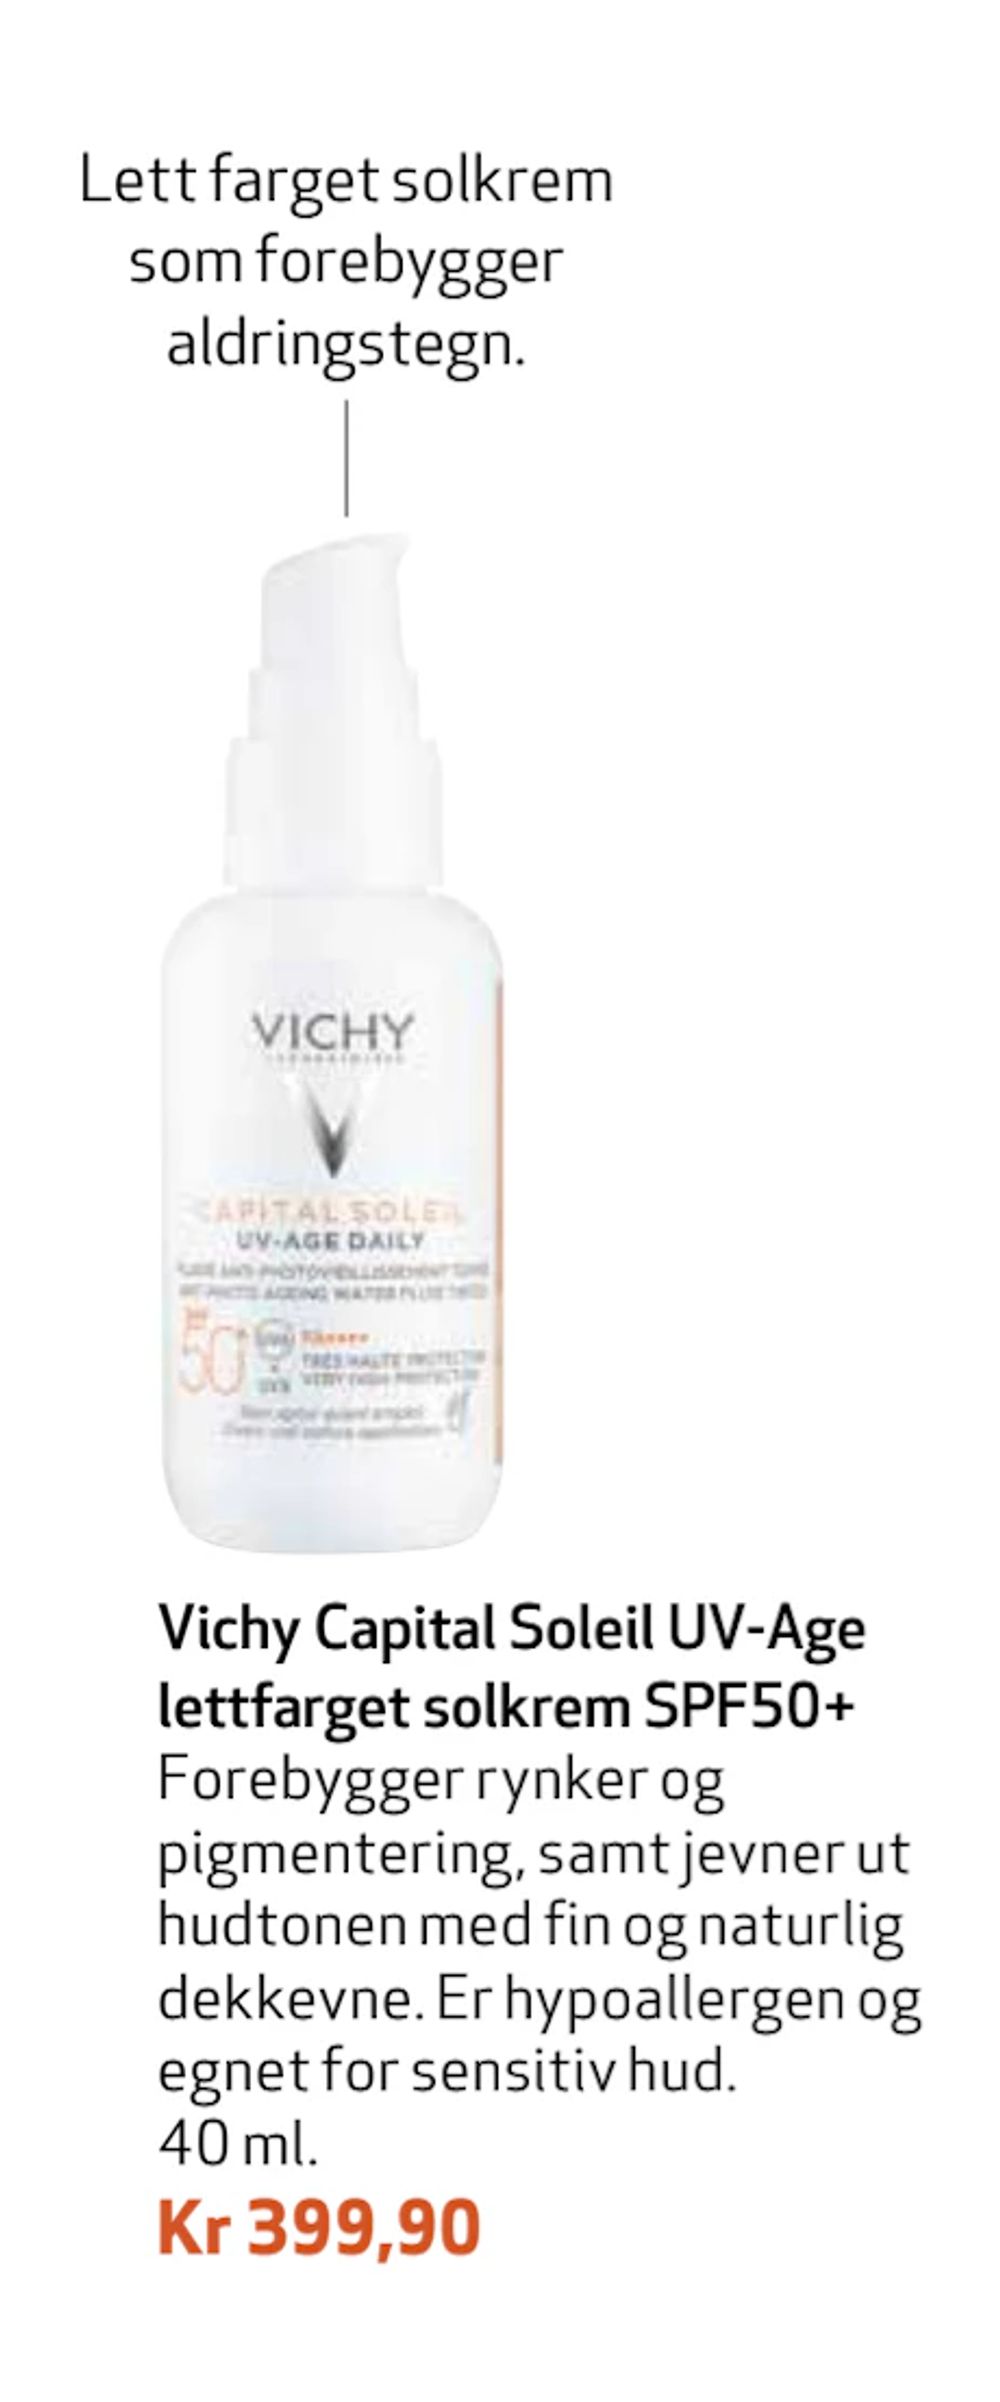 Tilbud på Vichy Capital Soleil UV-Age lettfarget solkrem SPF50+ fra Apotek 1 til 399,90 kr